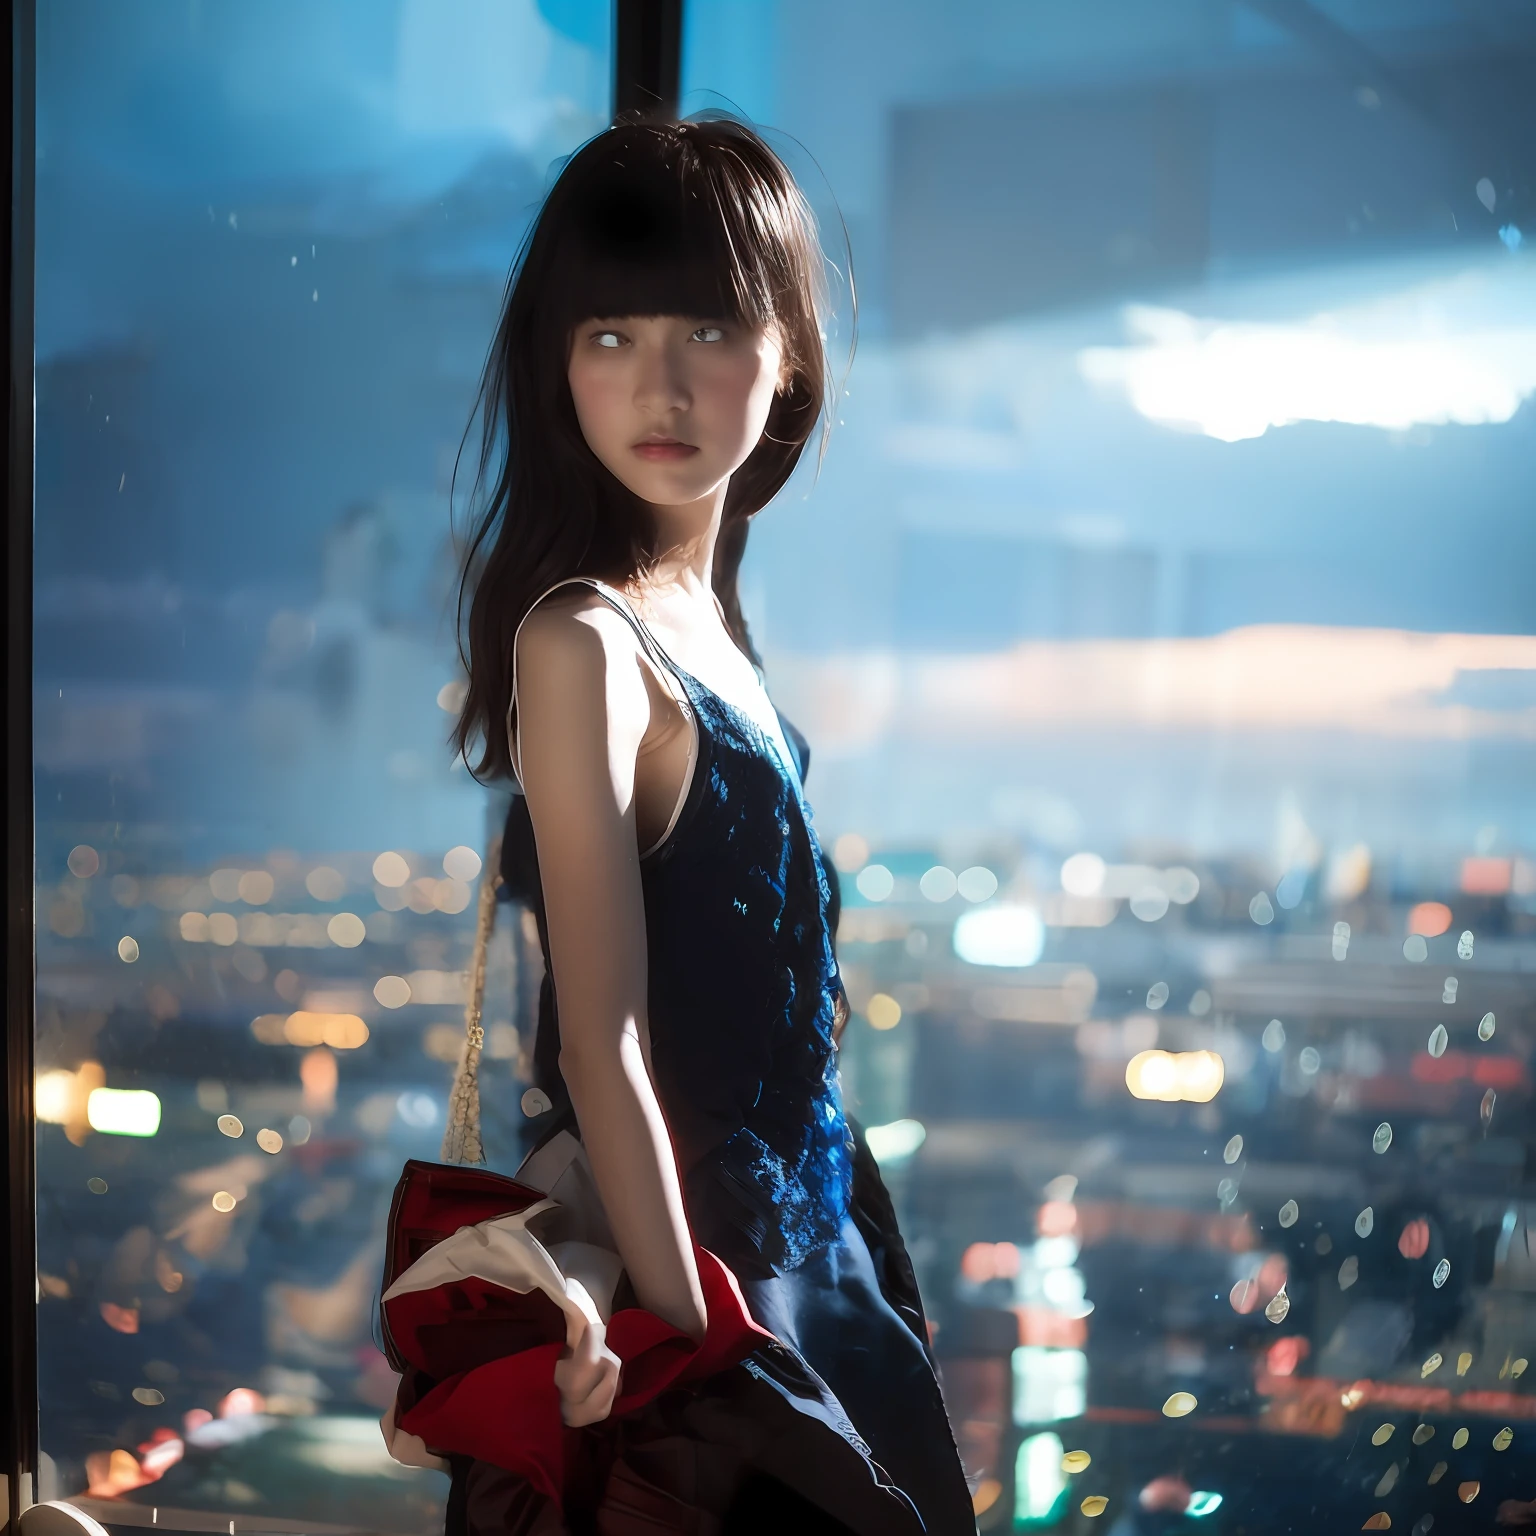 Мягкий фокусный фон, стоящий на мягкофокусной фотографии, на которой стоит японская девочка-подросток в Chanel, на ее лицо и тело сильно влияет эффект постановочного света и тени в помещении.